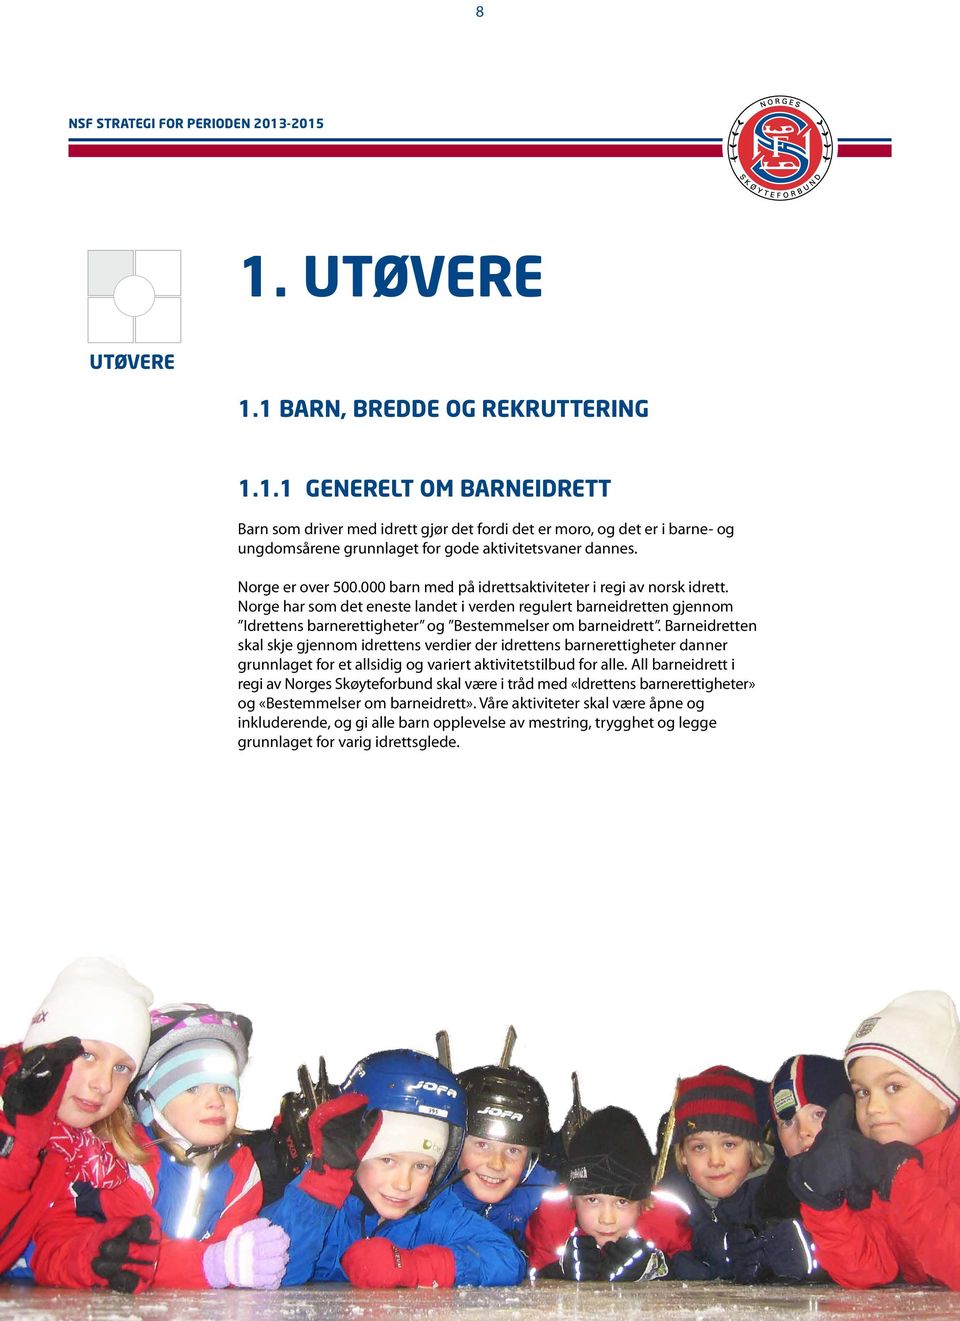 Norge har som det eneste landet i verden regulert barneidretten gjennom Idrettens barnerettigheter og Bestemmelser om barneidrett.